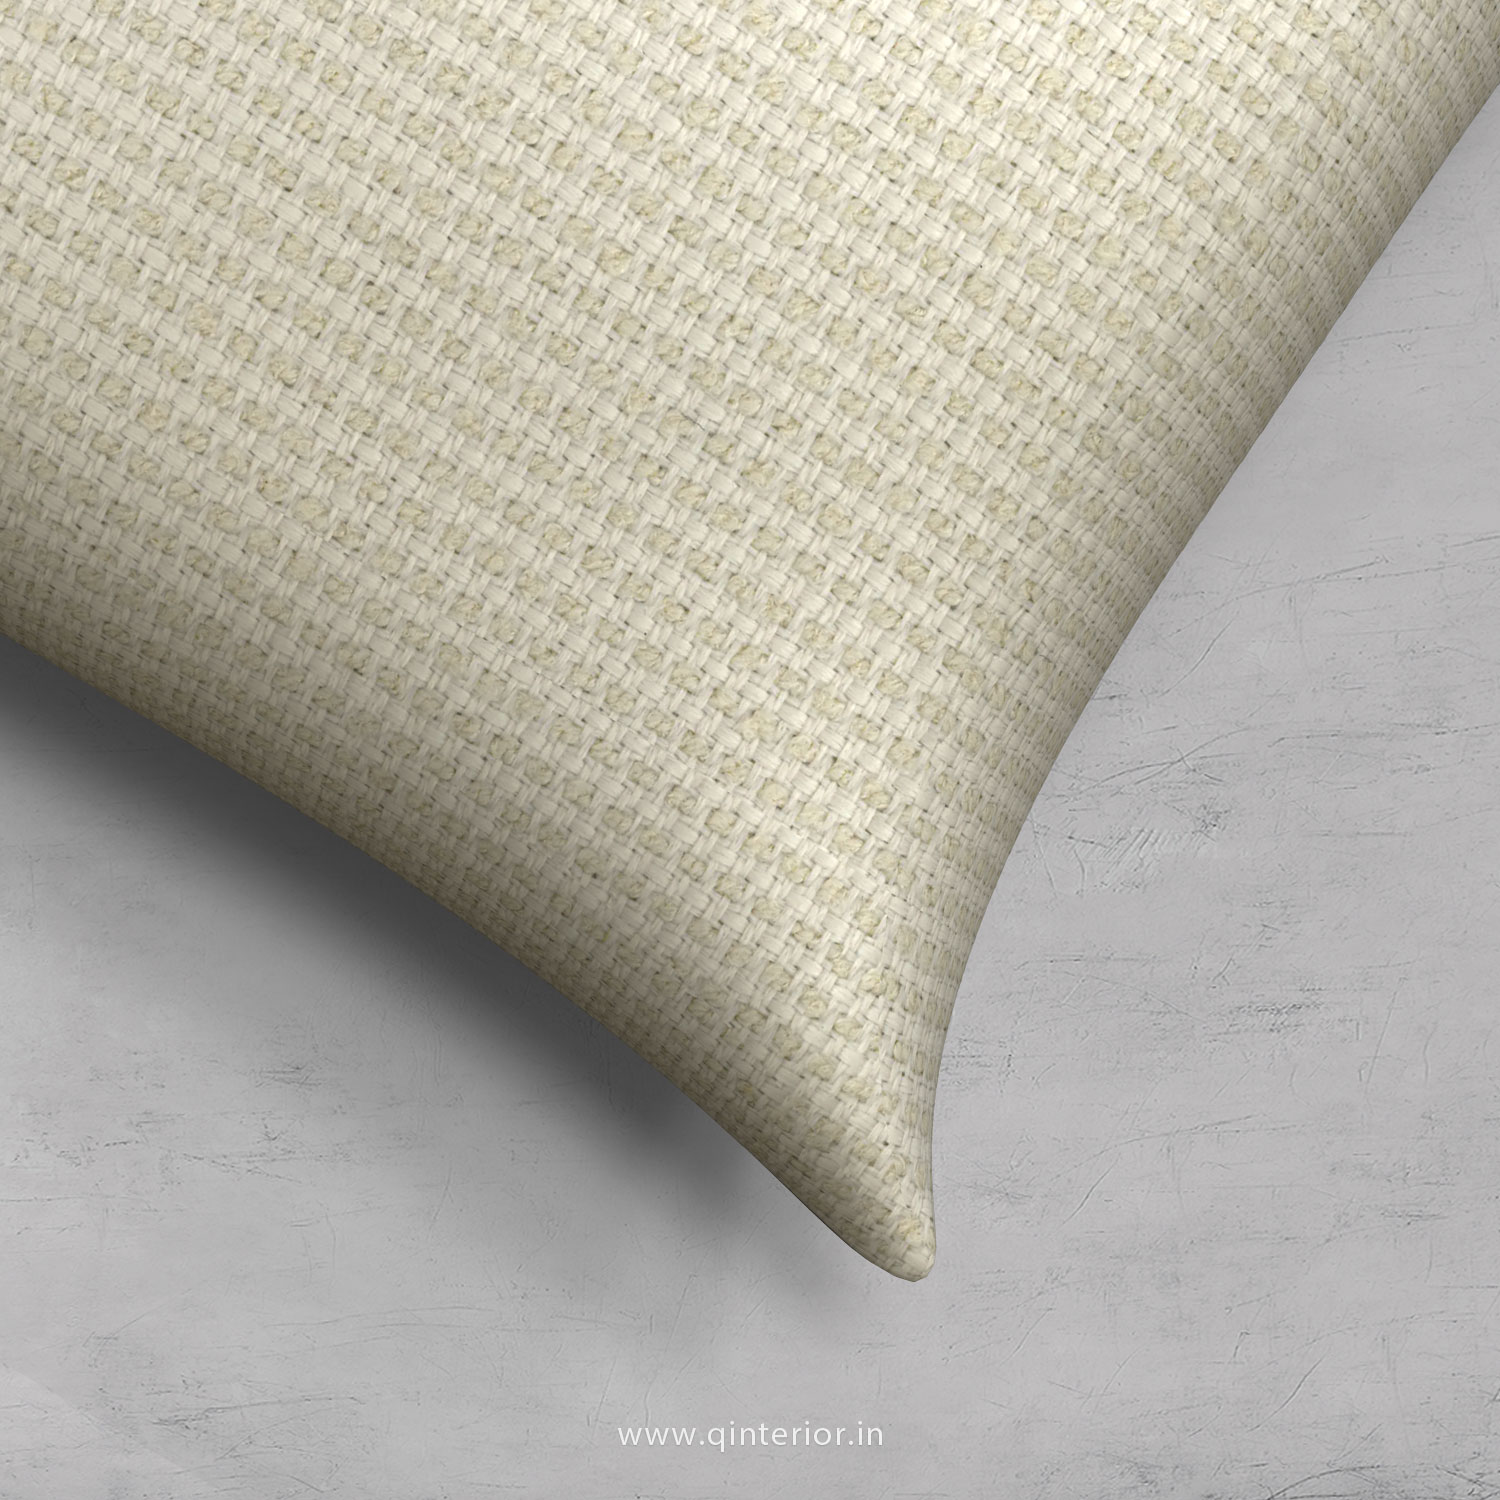 Cushion With Cushion Cover in Cotton Plain - CUS001 CP04